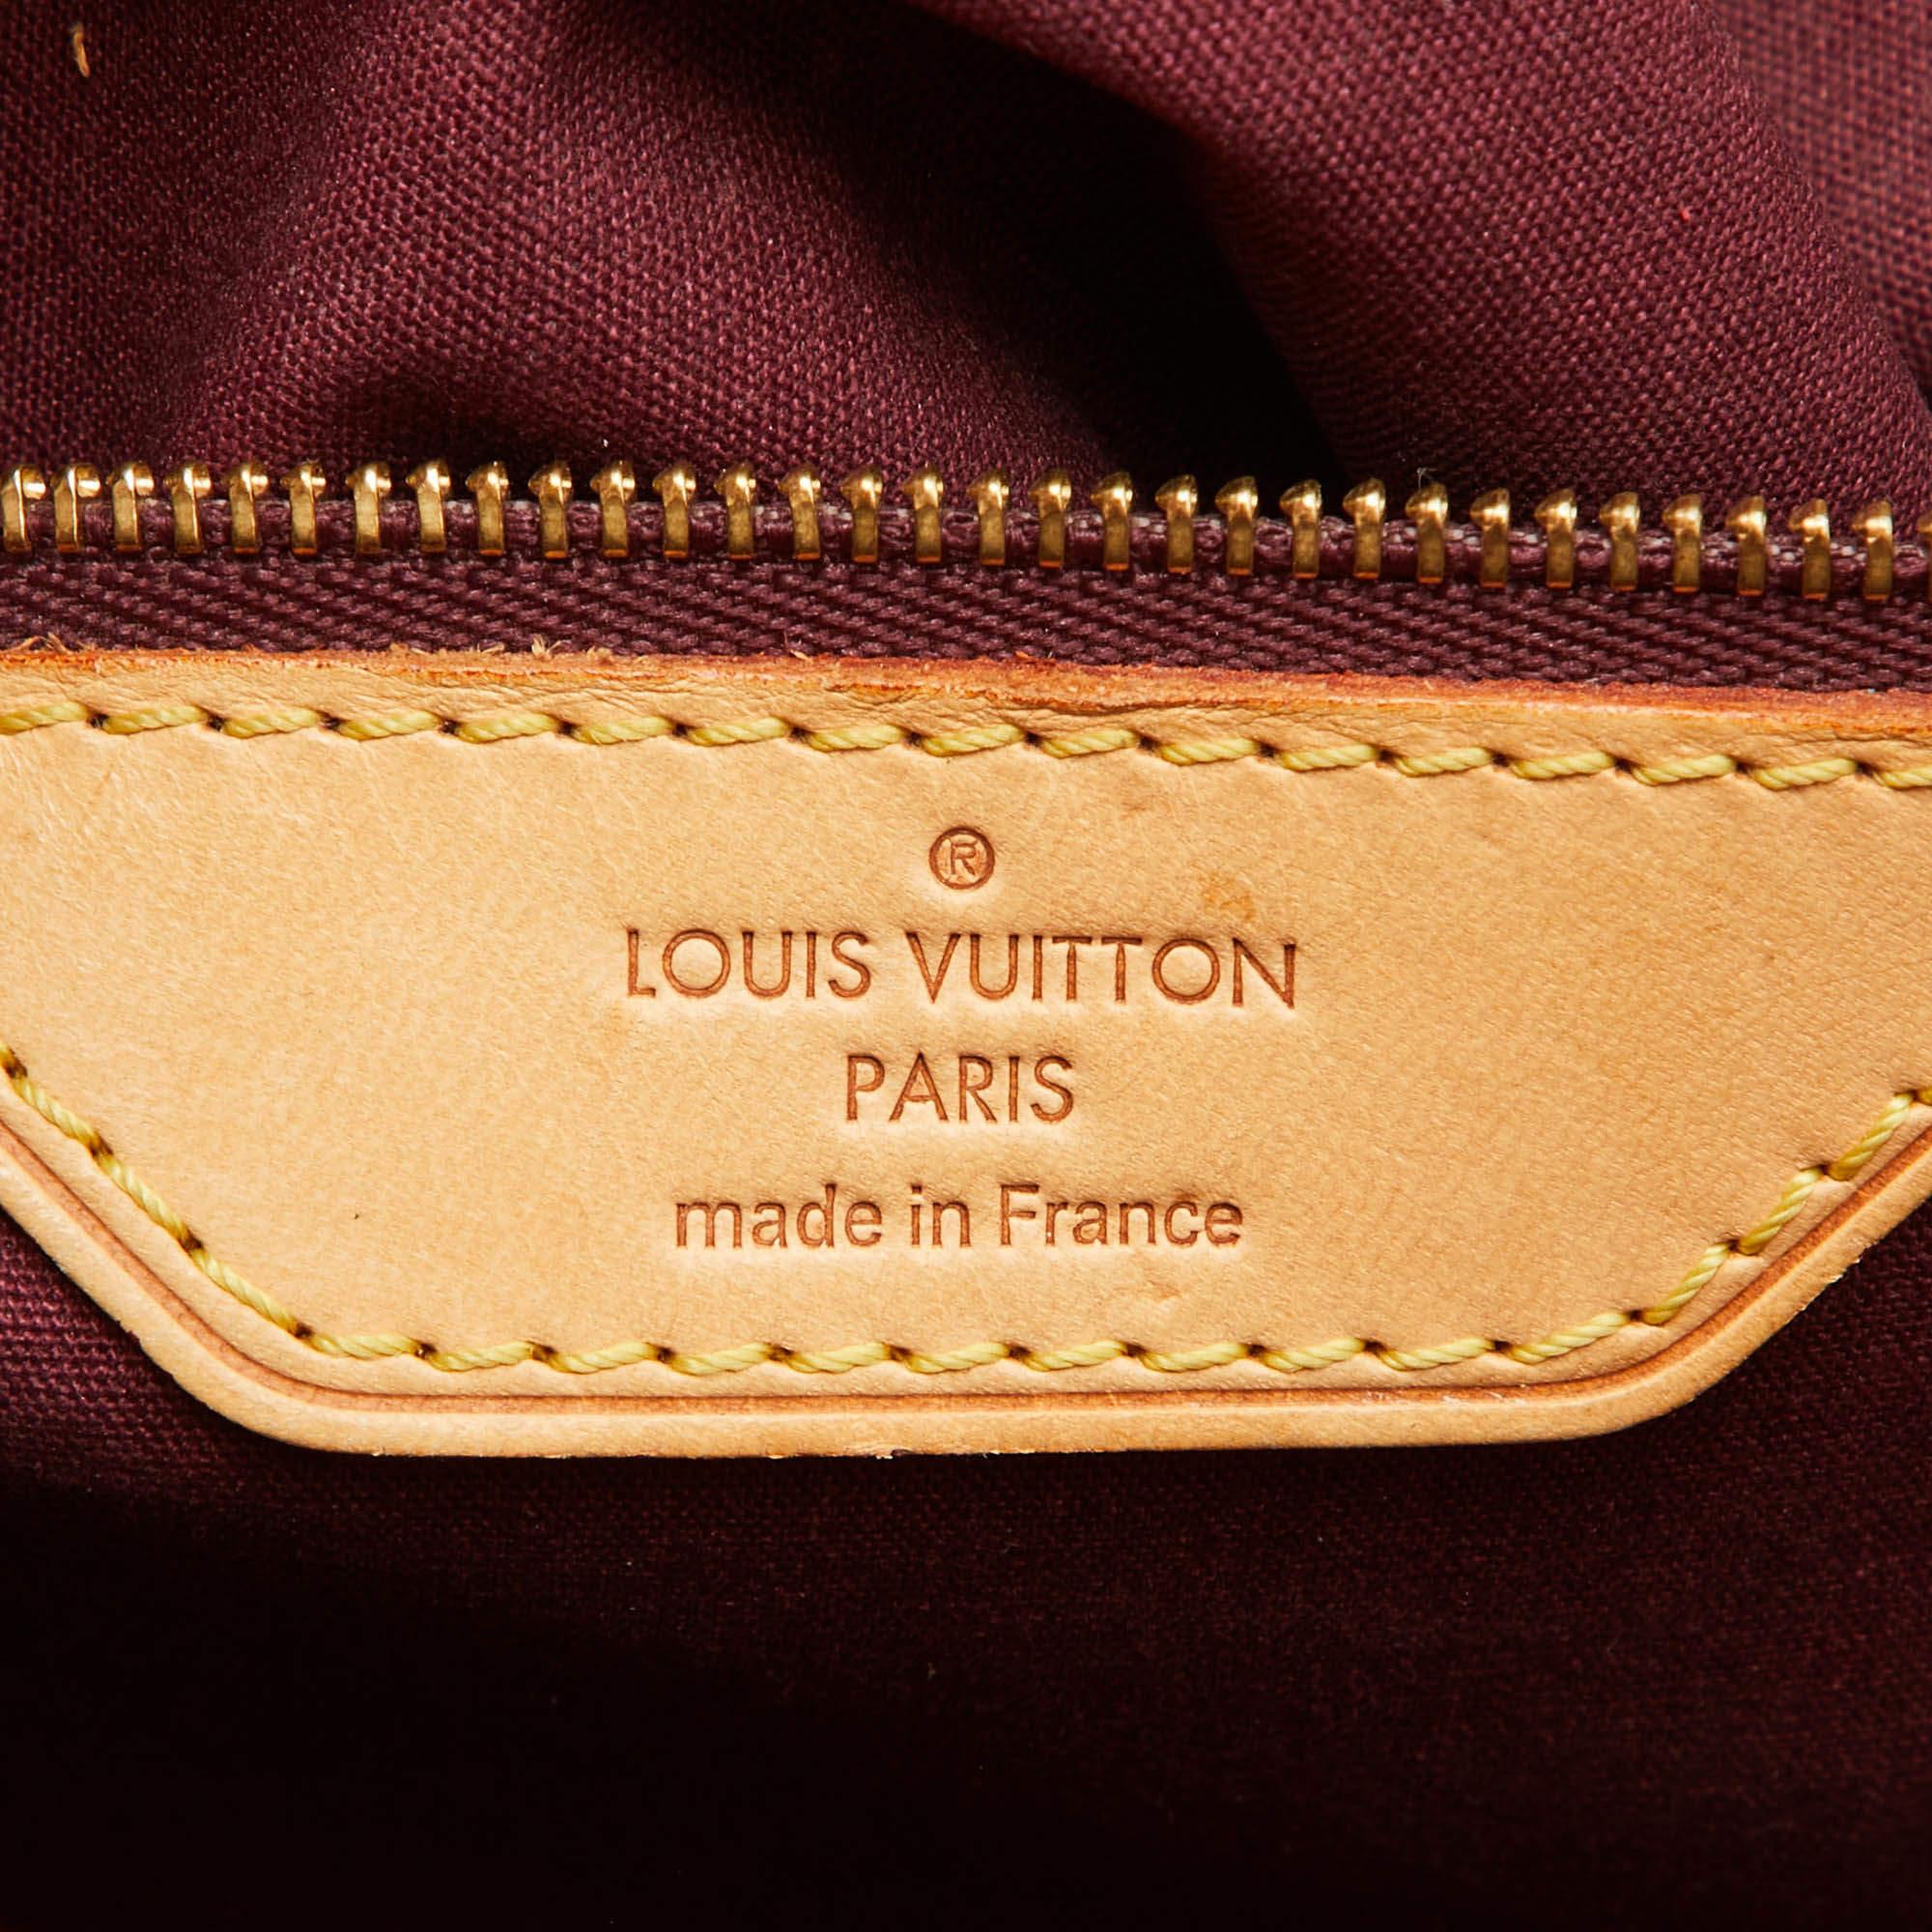 Louis Vuitton Amarante Monogram Vernis Brea MM Bag For Sale 8